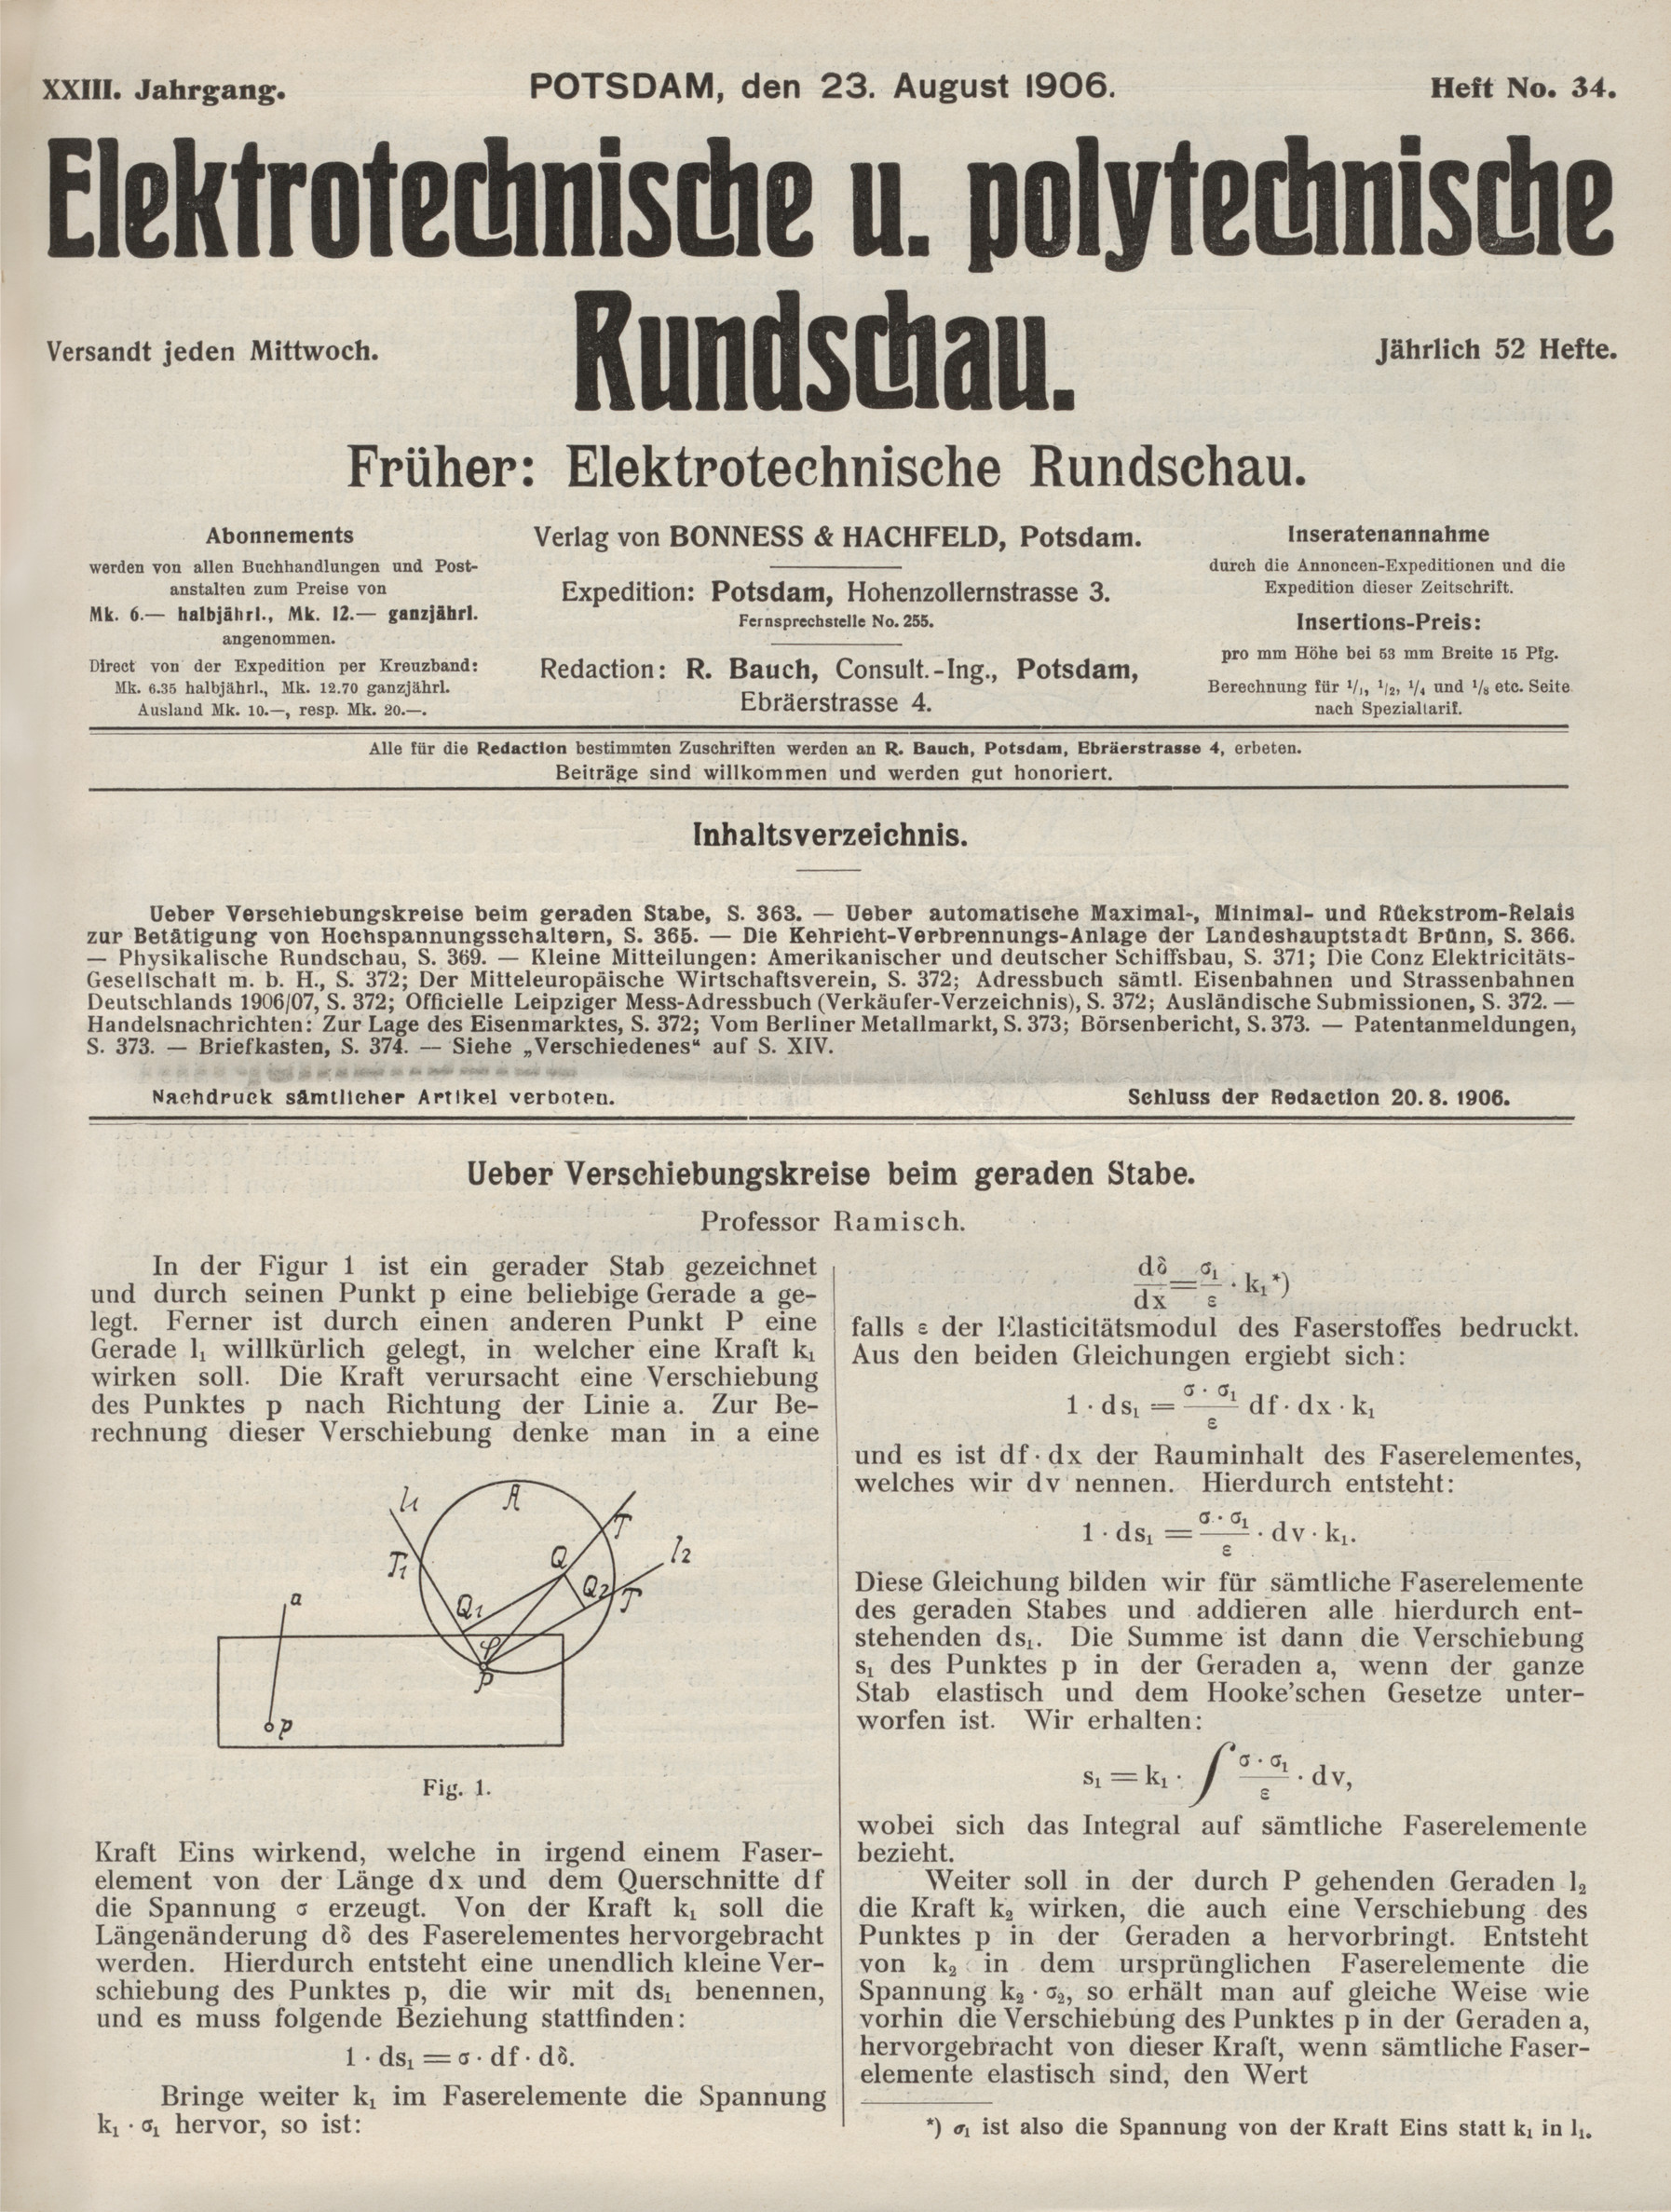 Elektrotechnische und polytechnische Rundschau, XXIII. Jahrgang, Heft No. 34